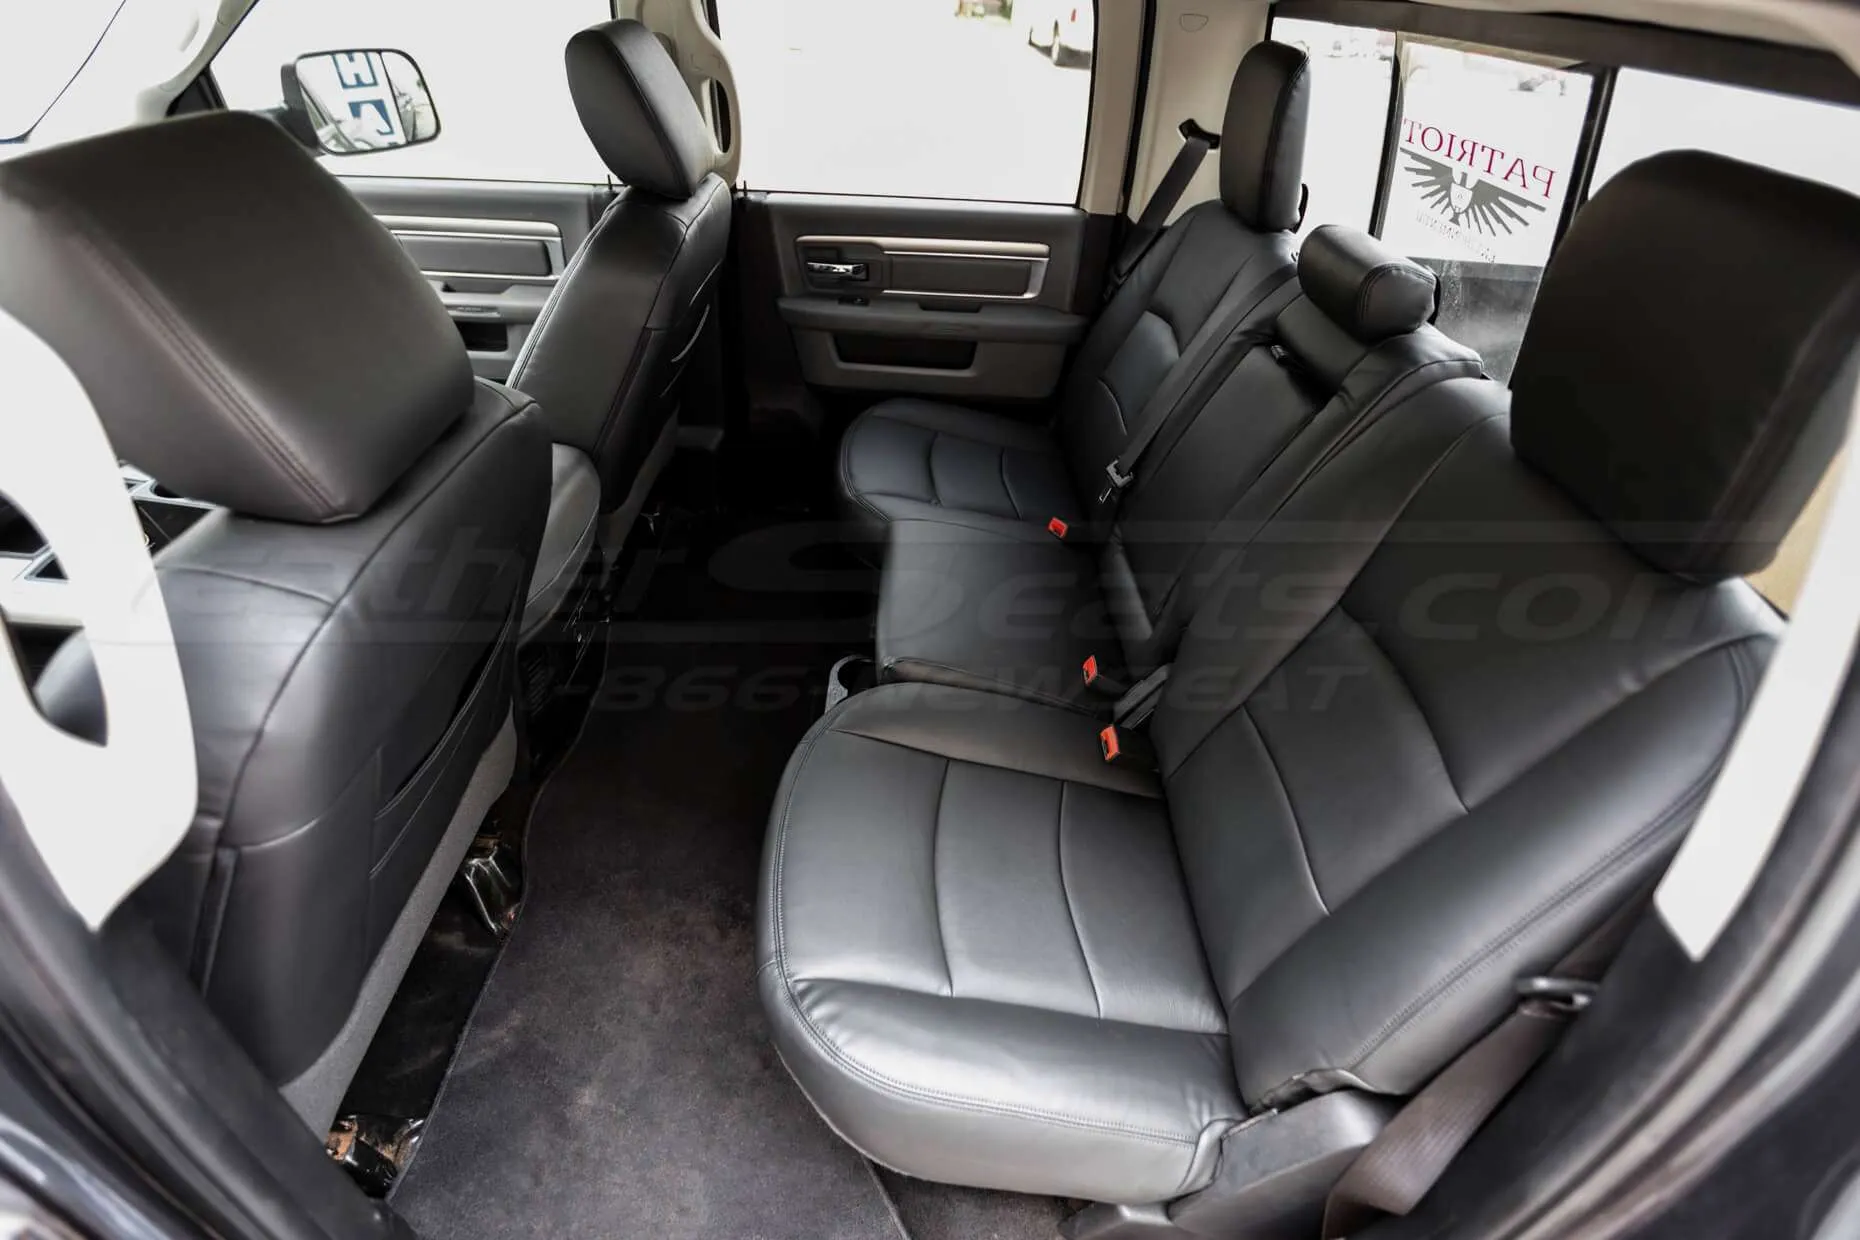 Dodge Ram rear leather seats in black